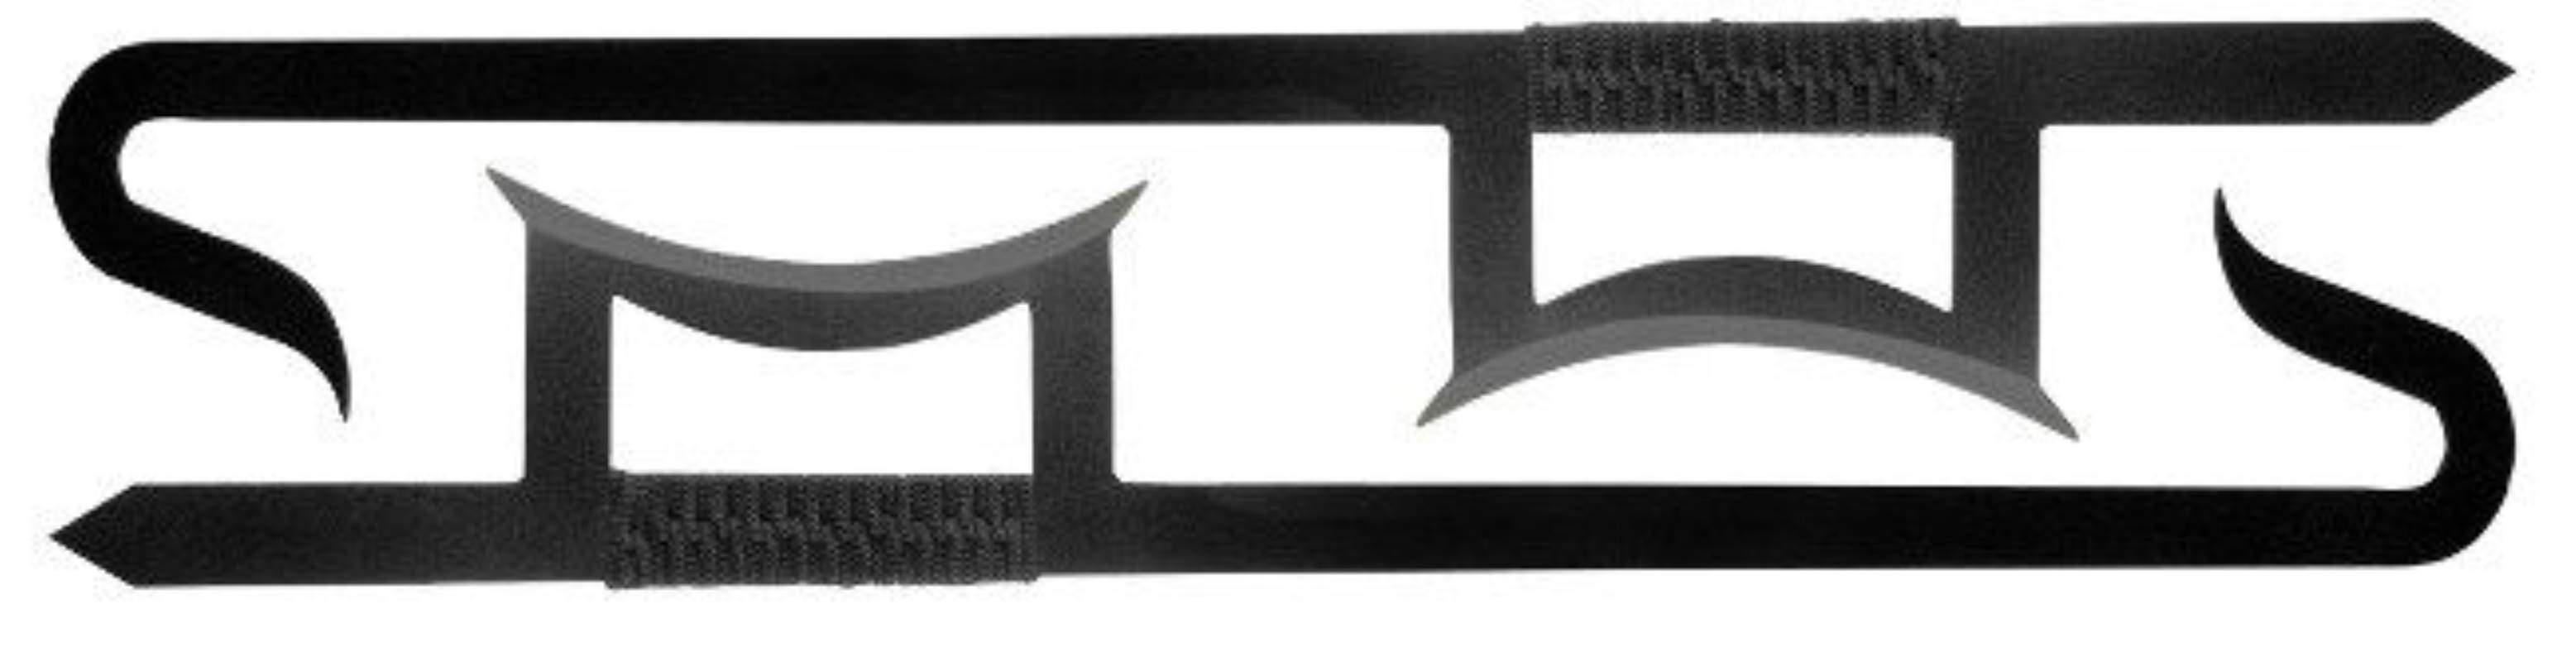 Chinese Hook Swords - Black